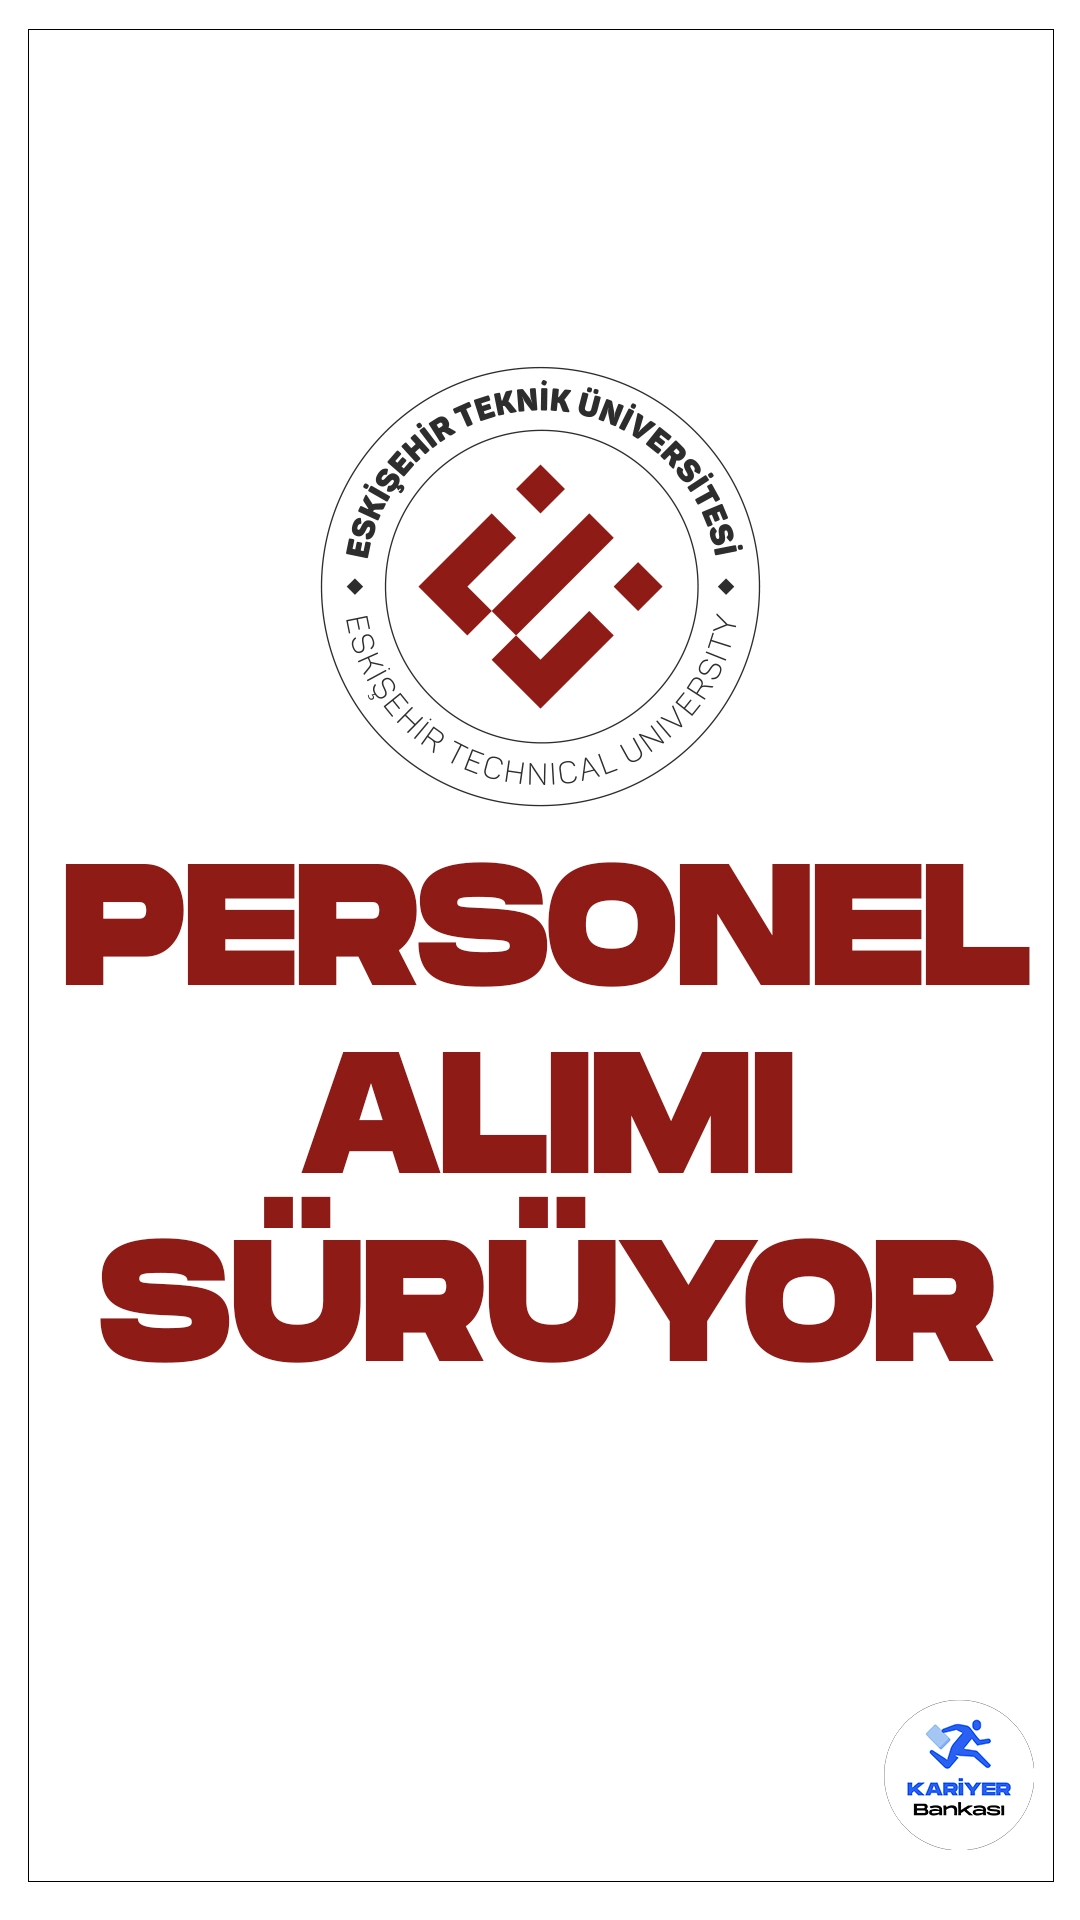 Eskişehir Teknik Üniversitesi 8 Personel Alımı Sürüyor.Cumhurbaşkanlığı SBB'de yayımlanan duyuruda, Eskişehir Teknik Üniversitesine büro personeli, koruma ve güvenlik görevlisi pozisyonları için sözleşmeli personel alınacağı aktarılırken, başvuruların 27 Mart'a kadar süreceği kaydedildi. Başvuru yapacak adayların genel ve özel şartları dikkatle incelemesi gerekmektedir.